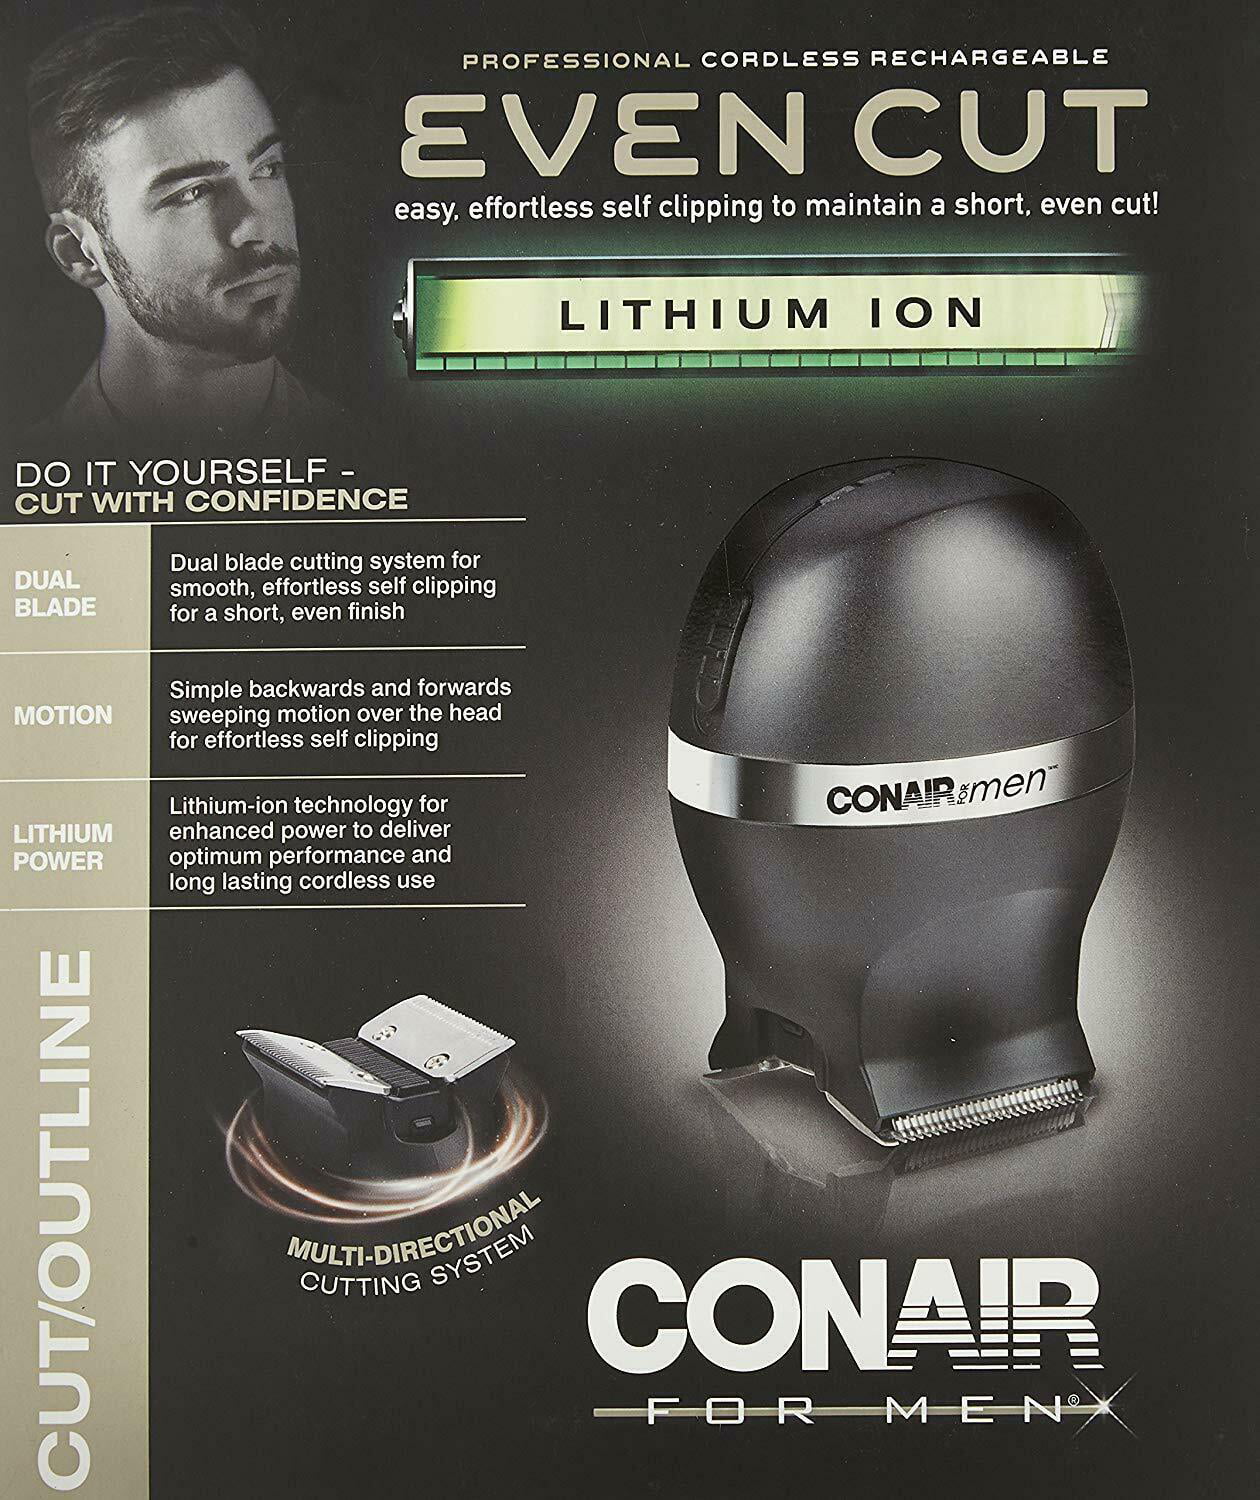 Conair Professional Even Cut Mens Cordless Hair Clipper Haircut Kit Home Hair Cutting Kit Walmart Com